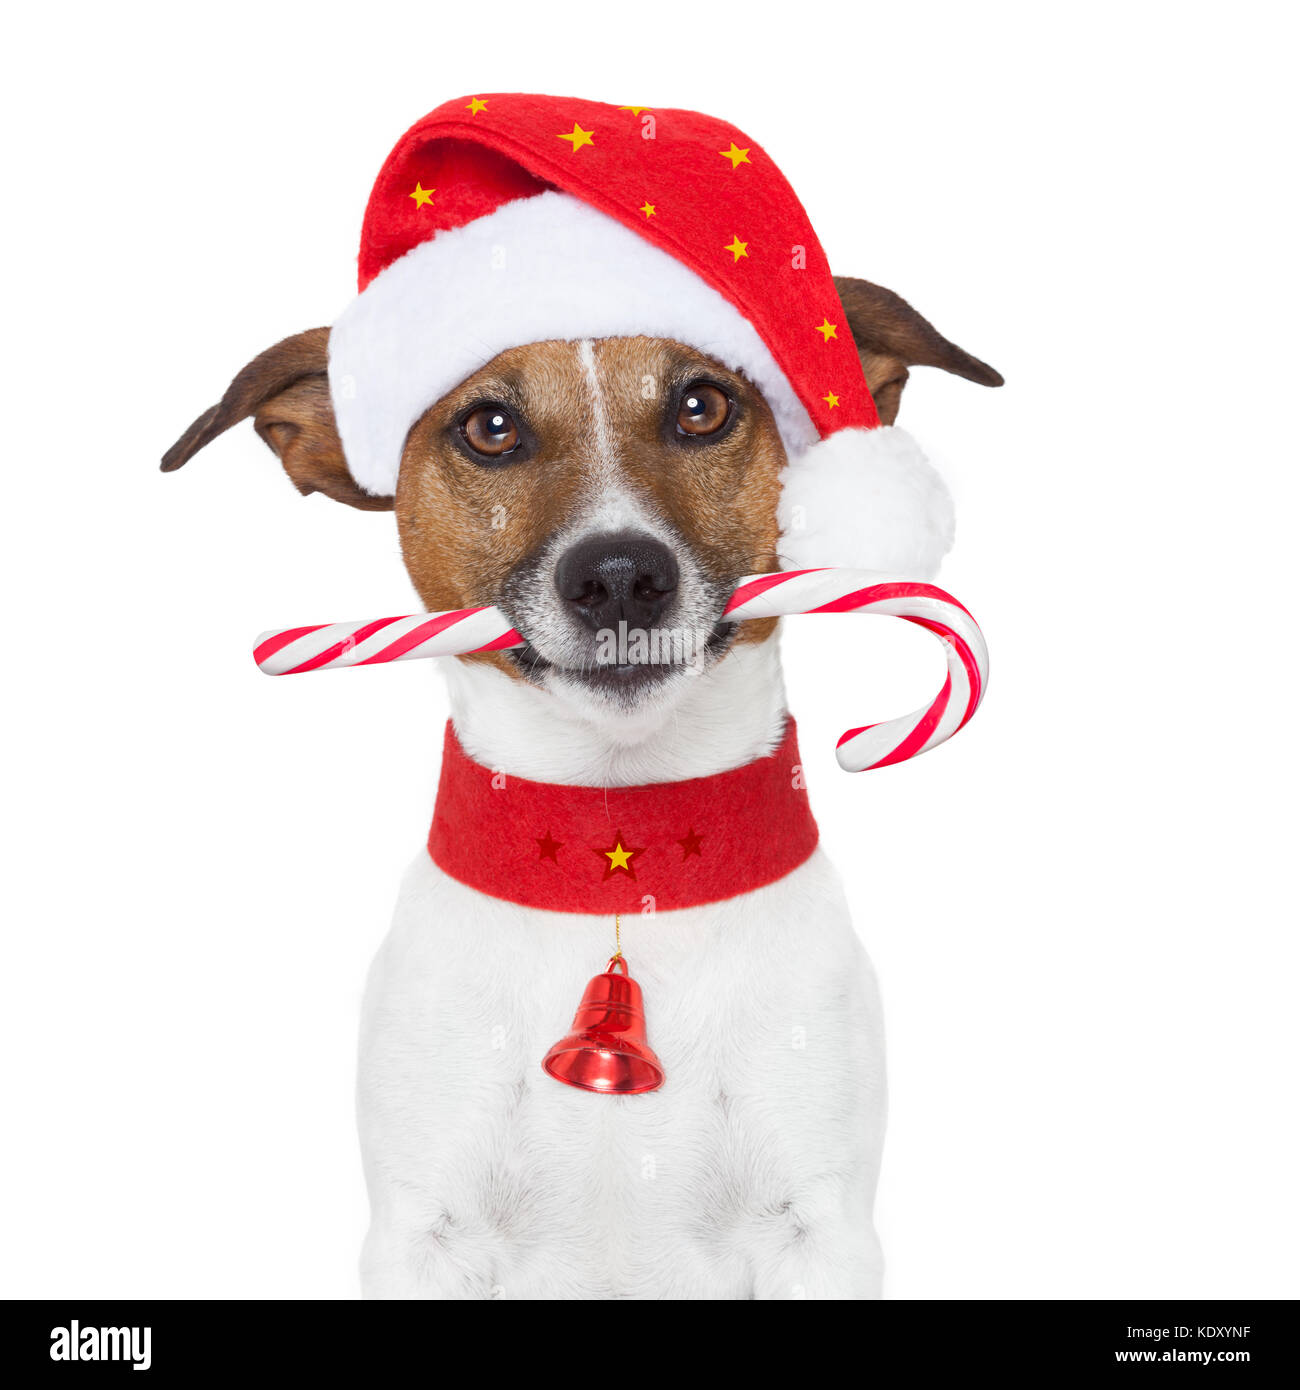 Weihnachten Hund als Weihnachtsmann Stockfotografie - Alamy